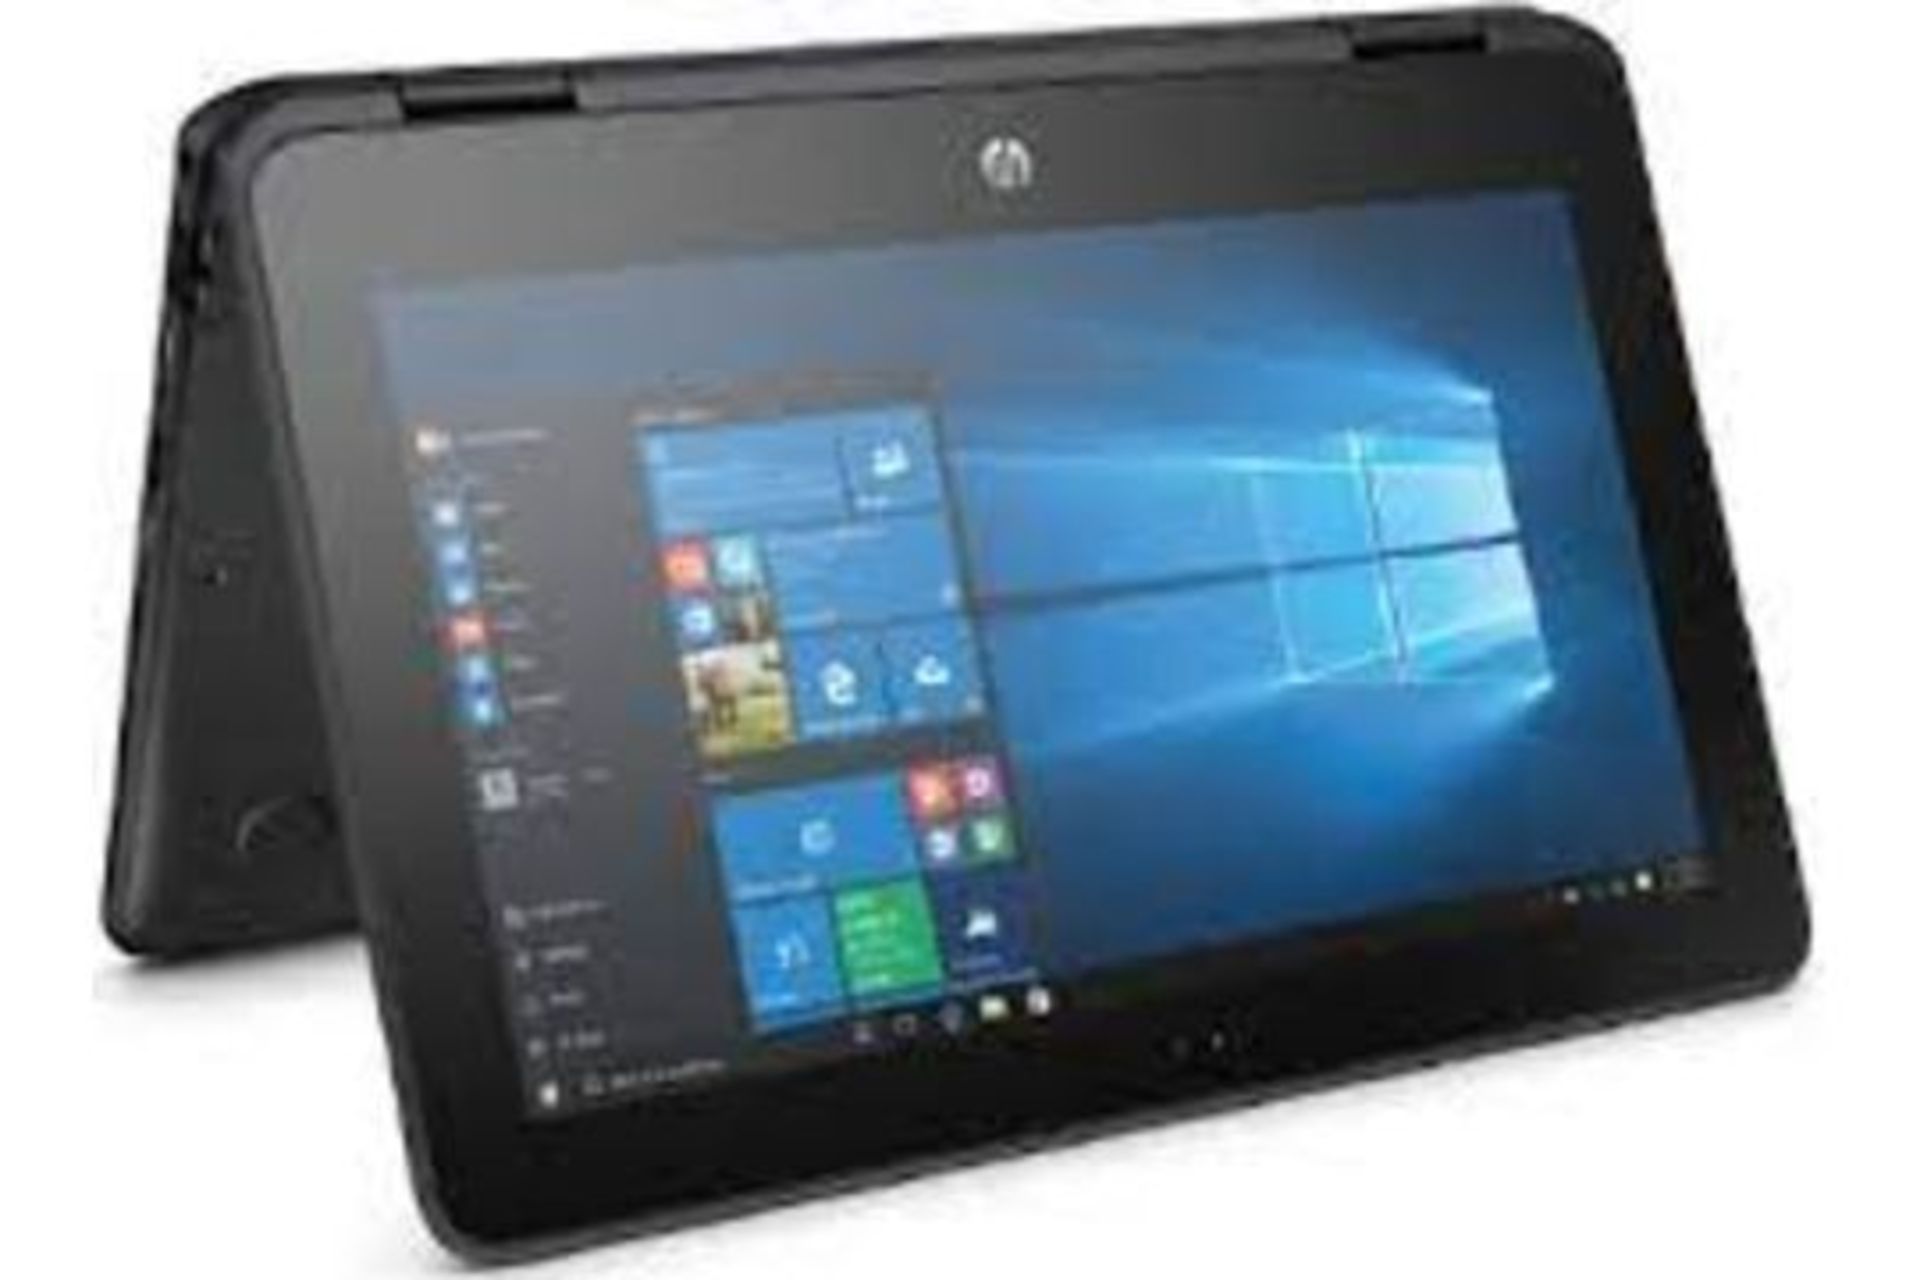 HP ProBook x360 11 G1 EE 2 IN 1 Laptop (Pentium Quad Core/4 GB/128 GB SSD) RRP £450